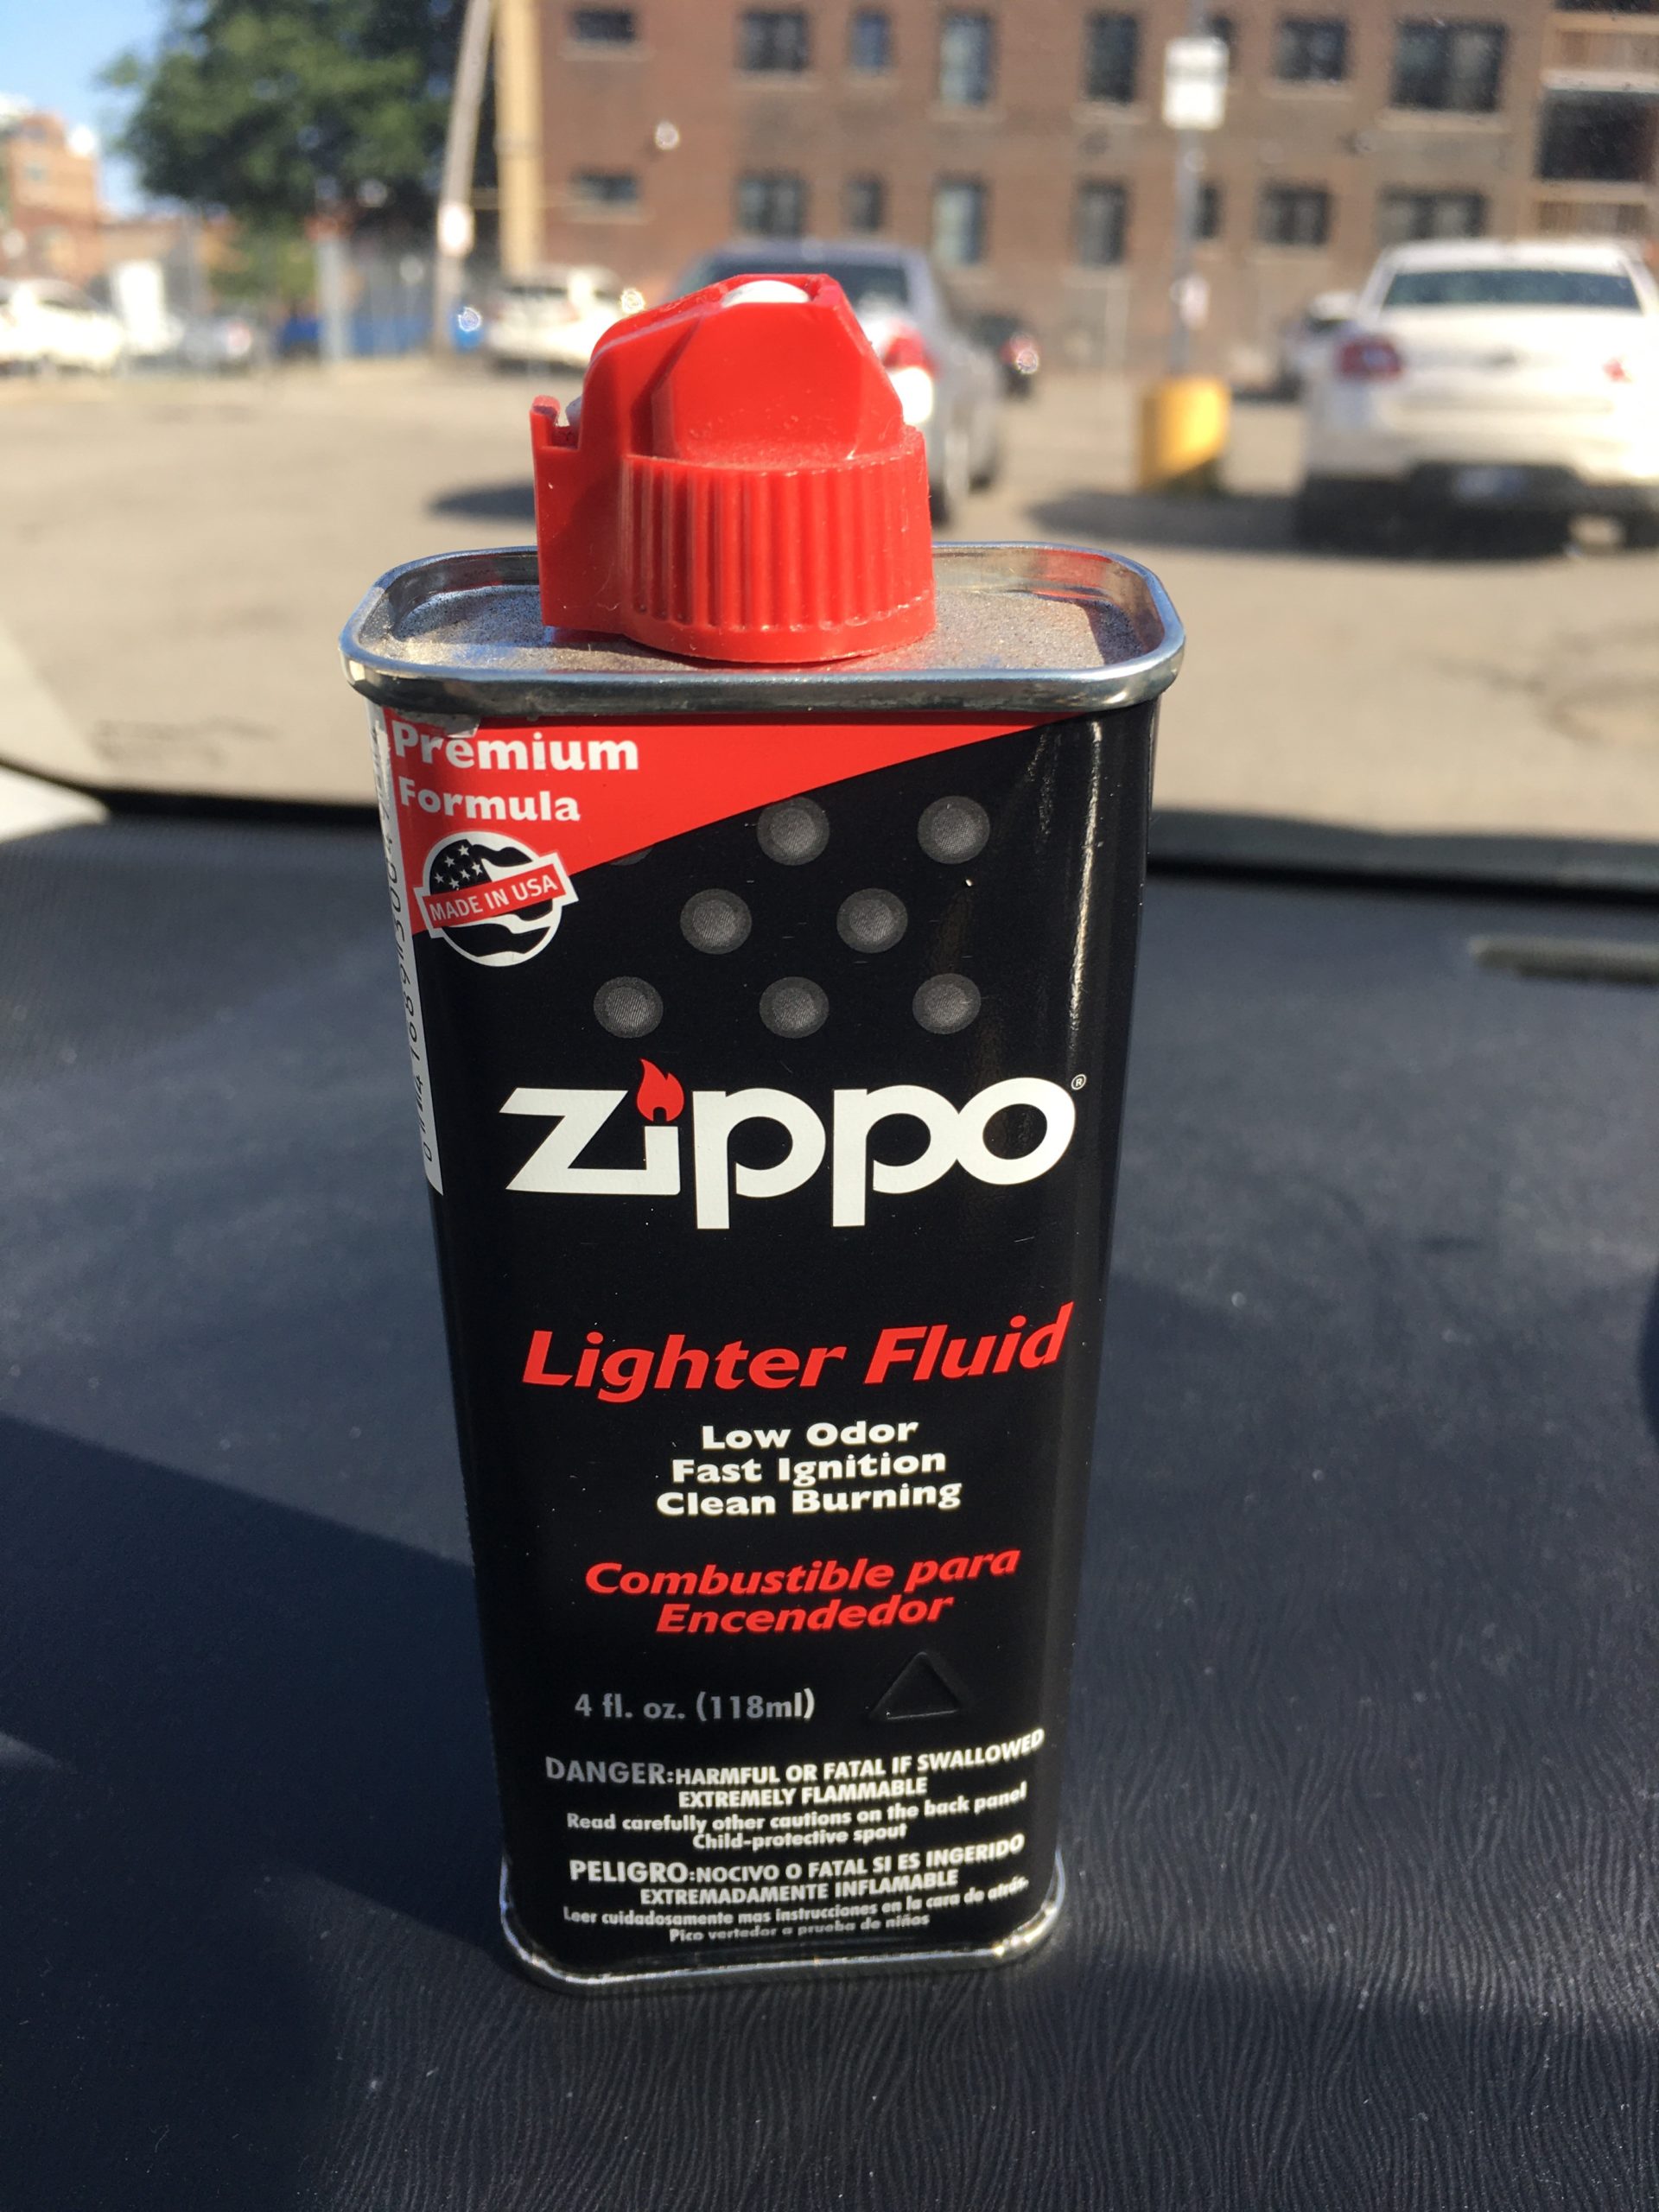 A tin of Zippo lighter fluid